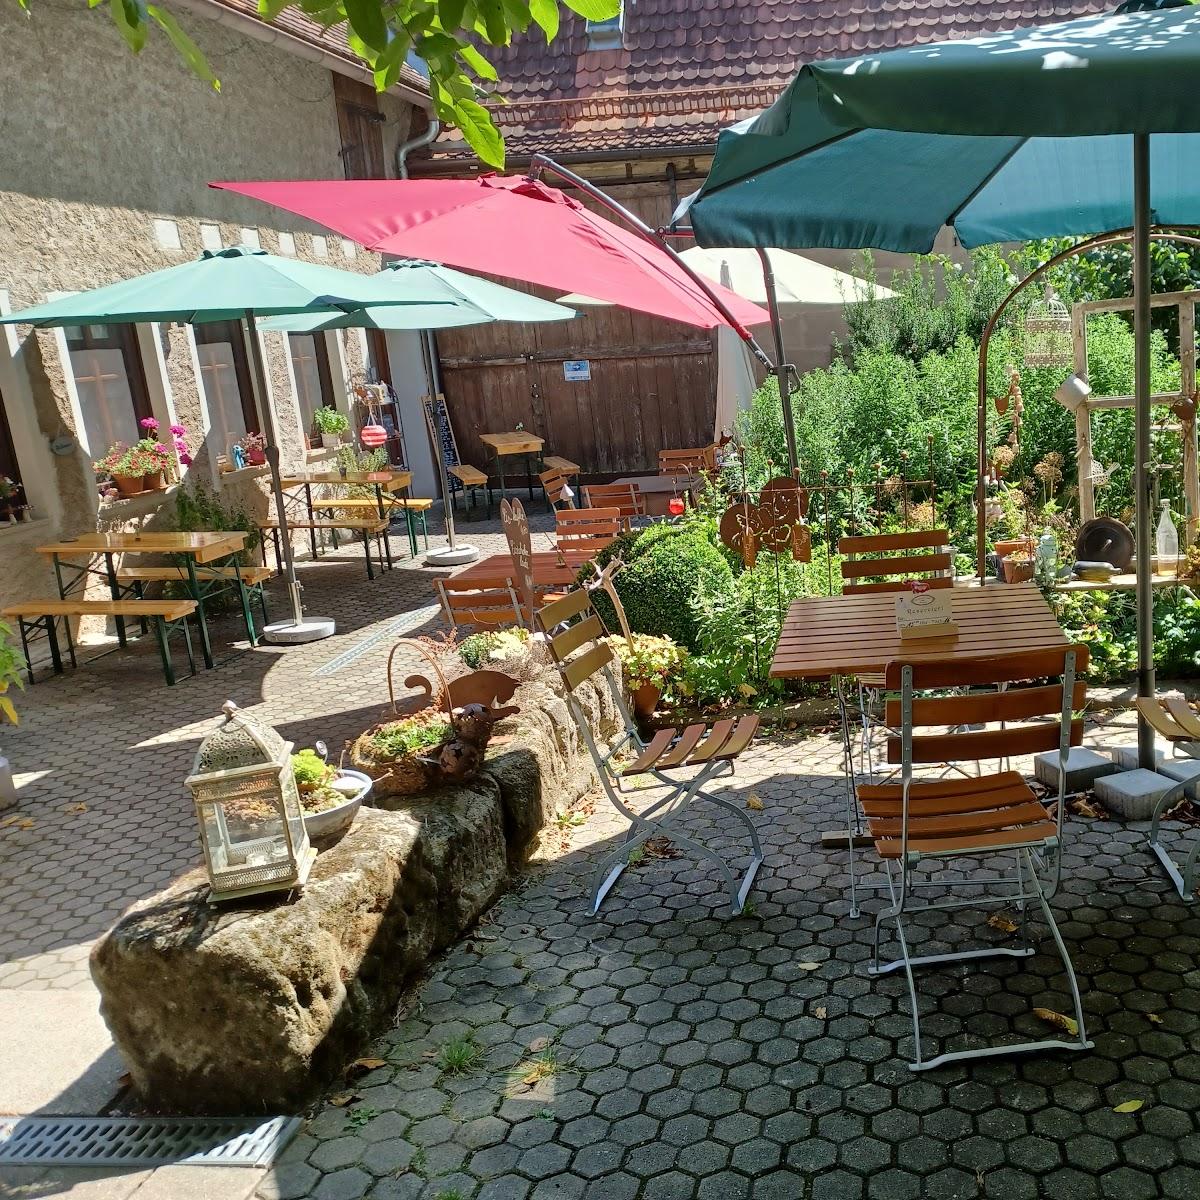 Restaurant "Gruschdl Café Krauter" in Spalt